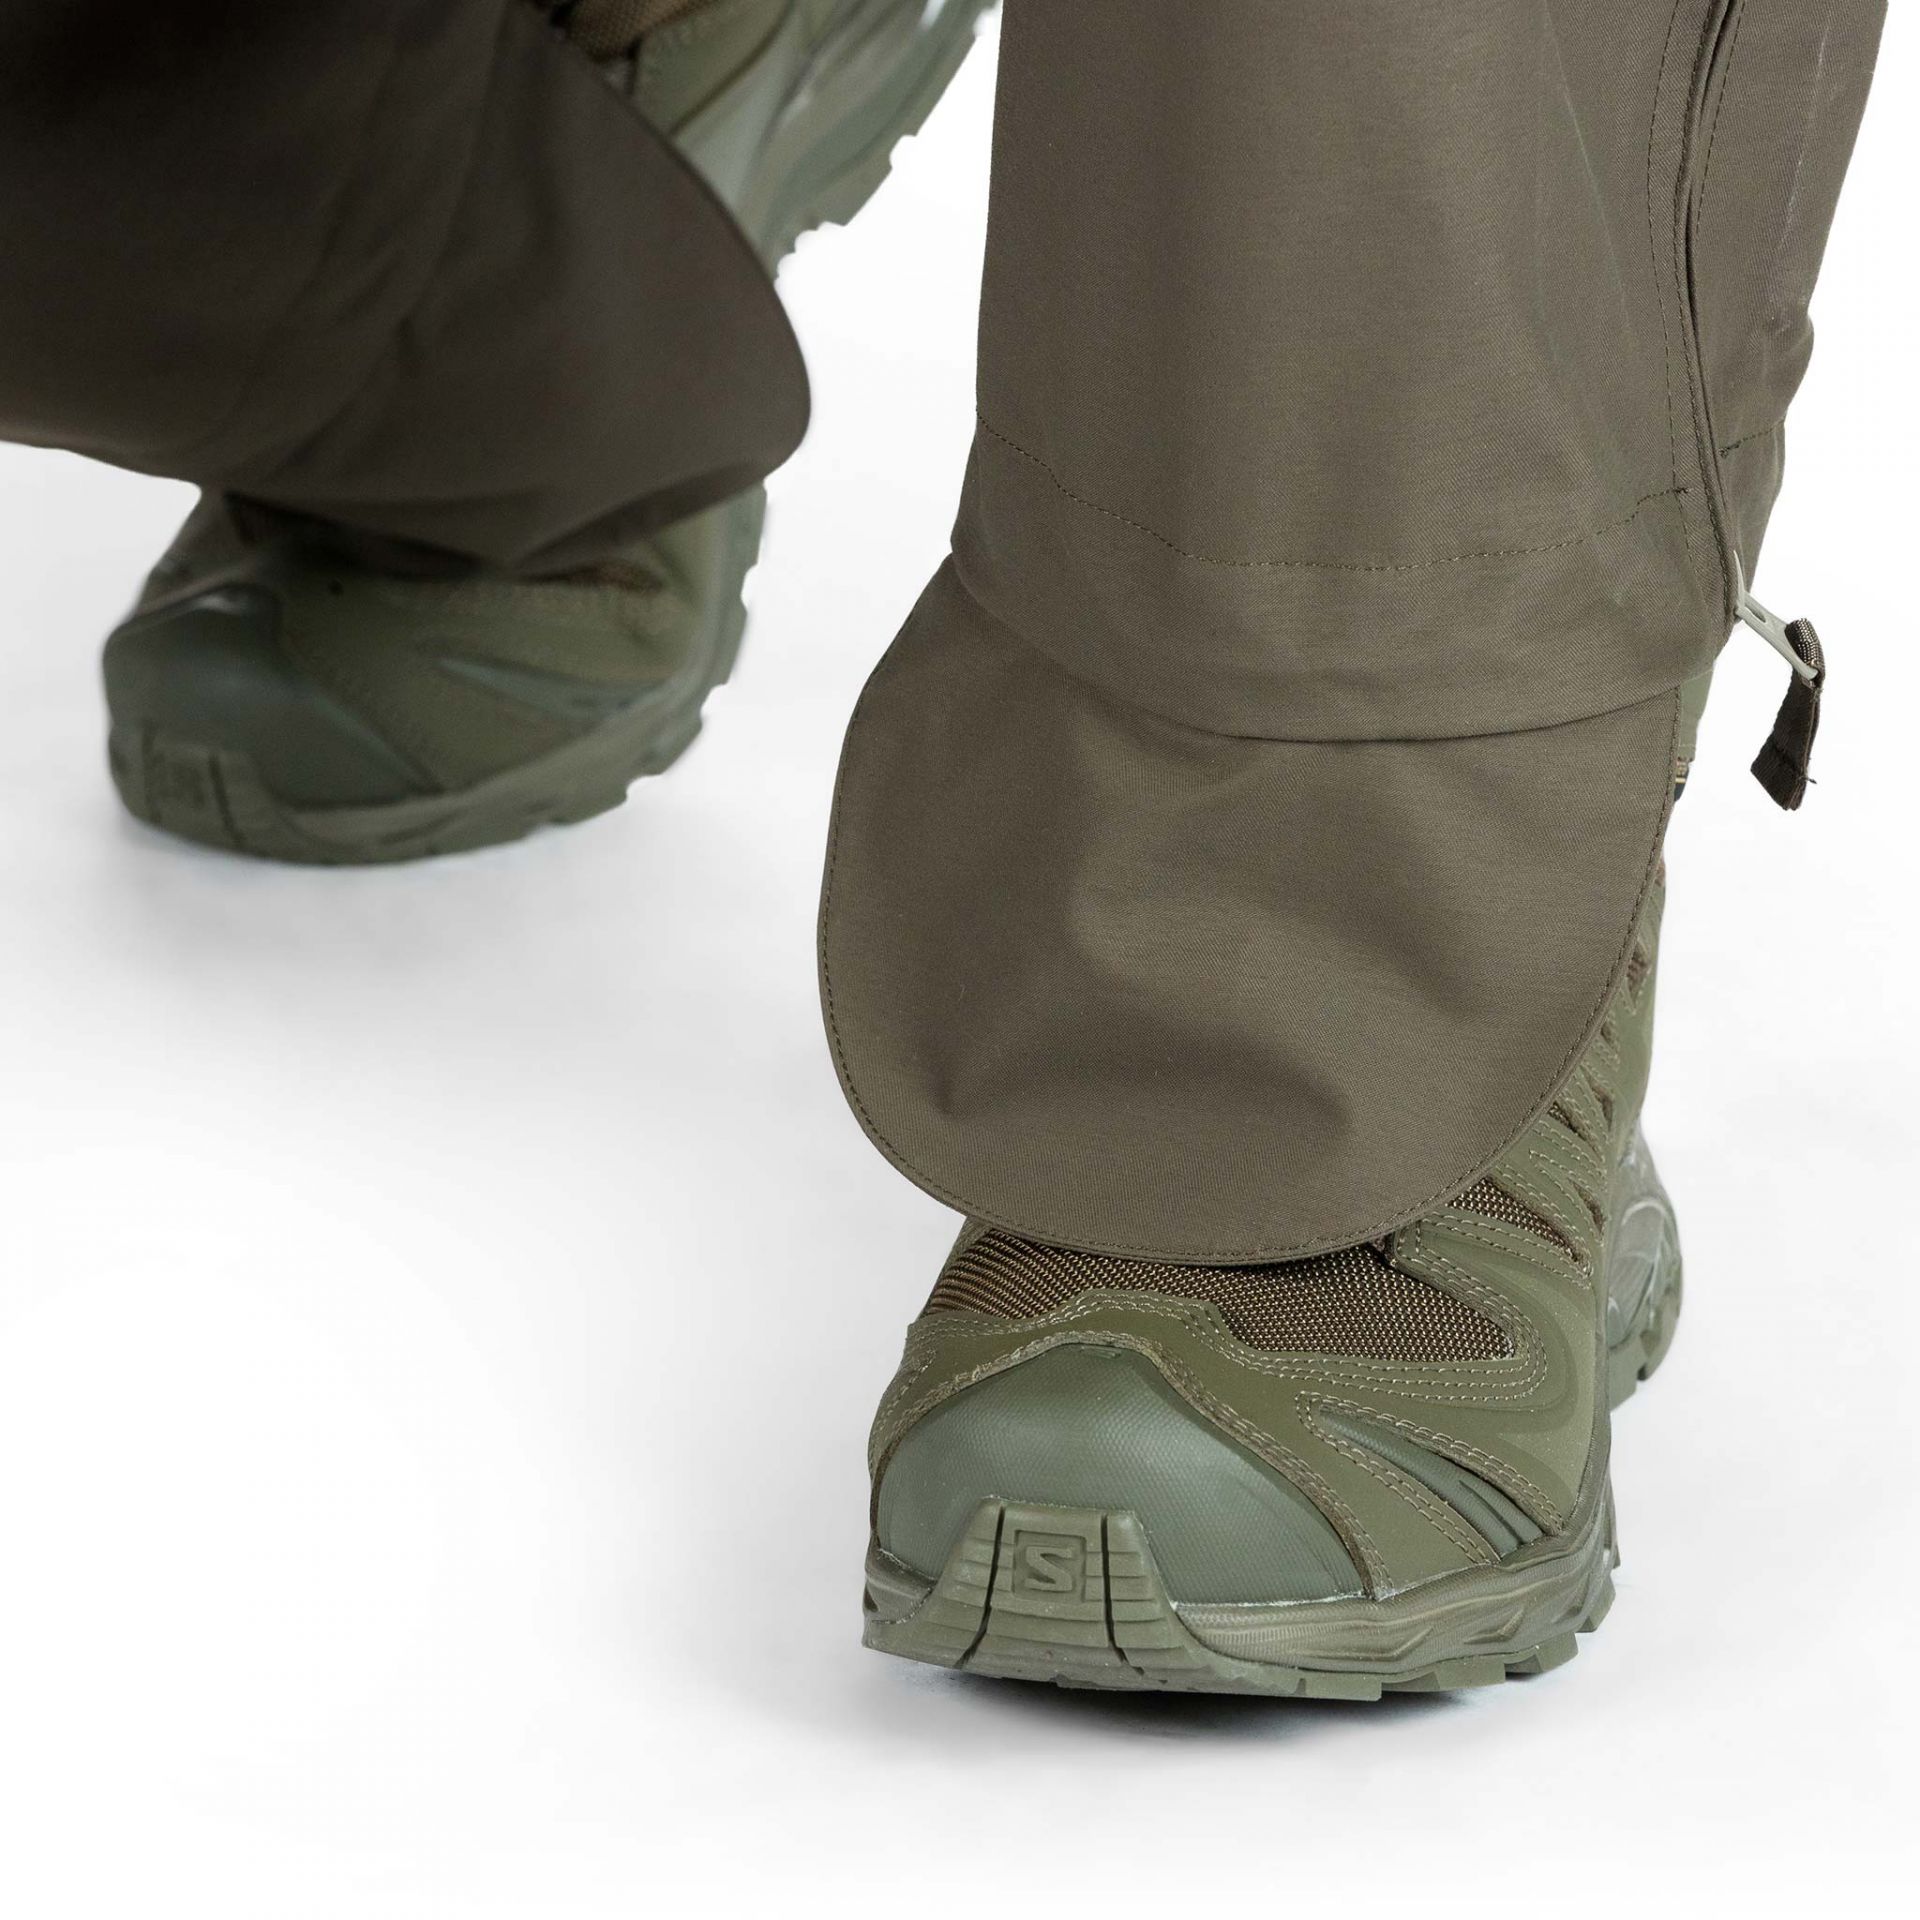 Regular Fit Water-repellent outdoor trousers - Black - Men | H&M IN